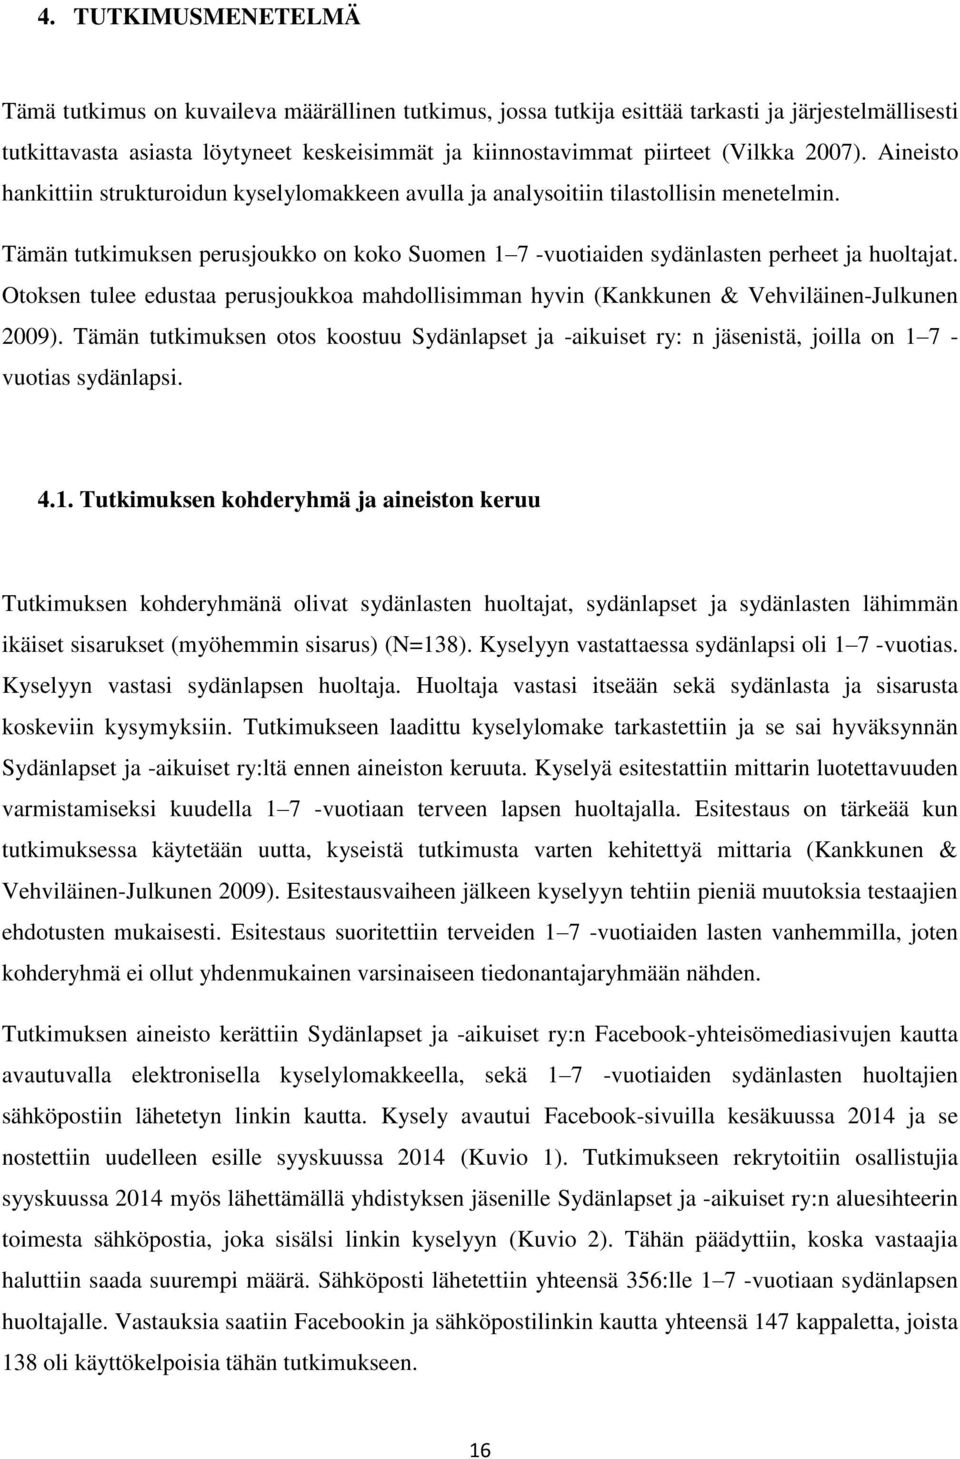 Tämän tutkimuksen perusjoukko on koko Suomen 1 7 -vuotiaiden sydänlasten perheet ja huoltajat. Otoksen tulee edustaa perusjoukkoa mahdollisimman hyvin (Kankkunen & Vehviläinen-Julkunen 2009).